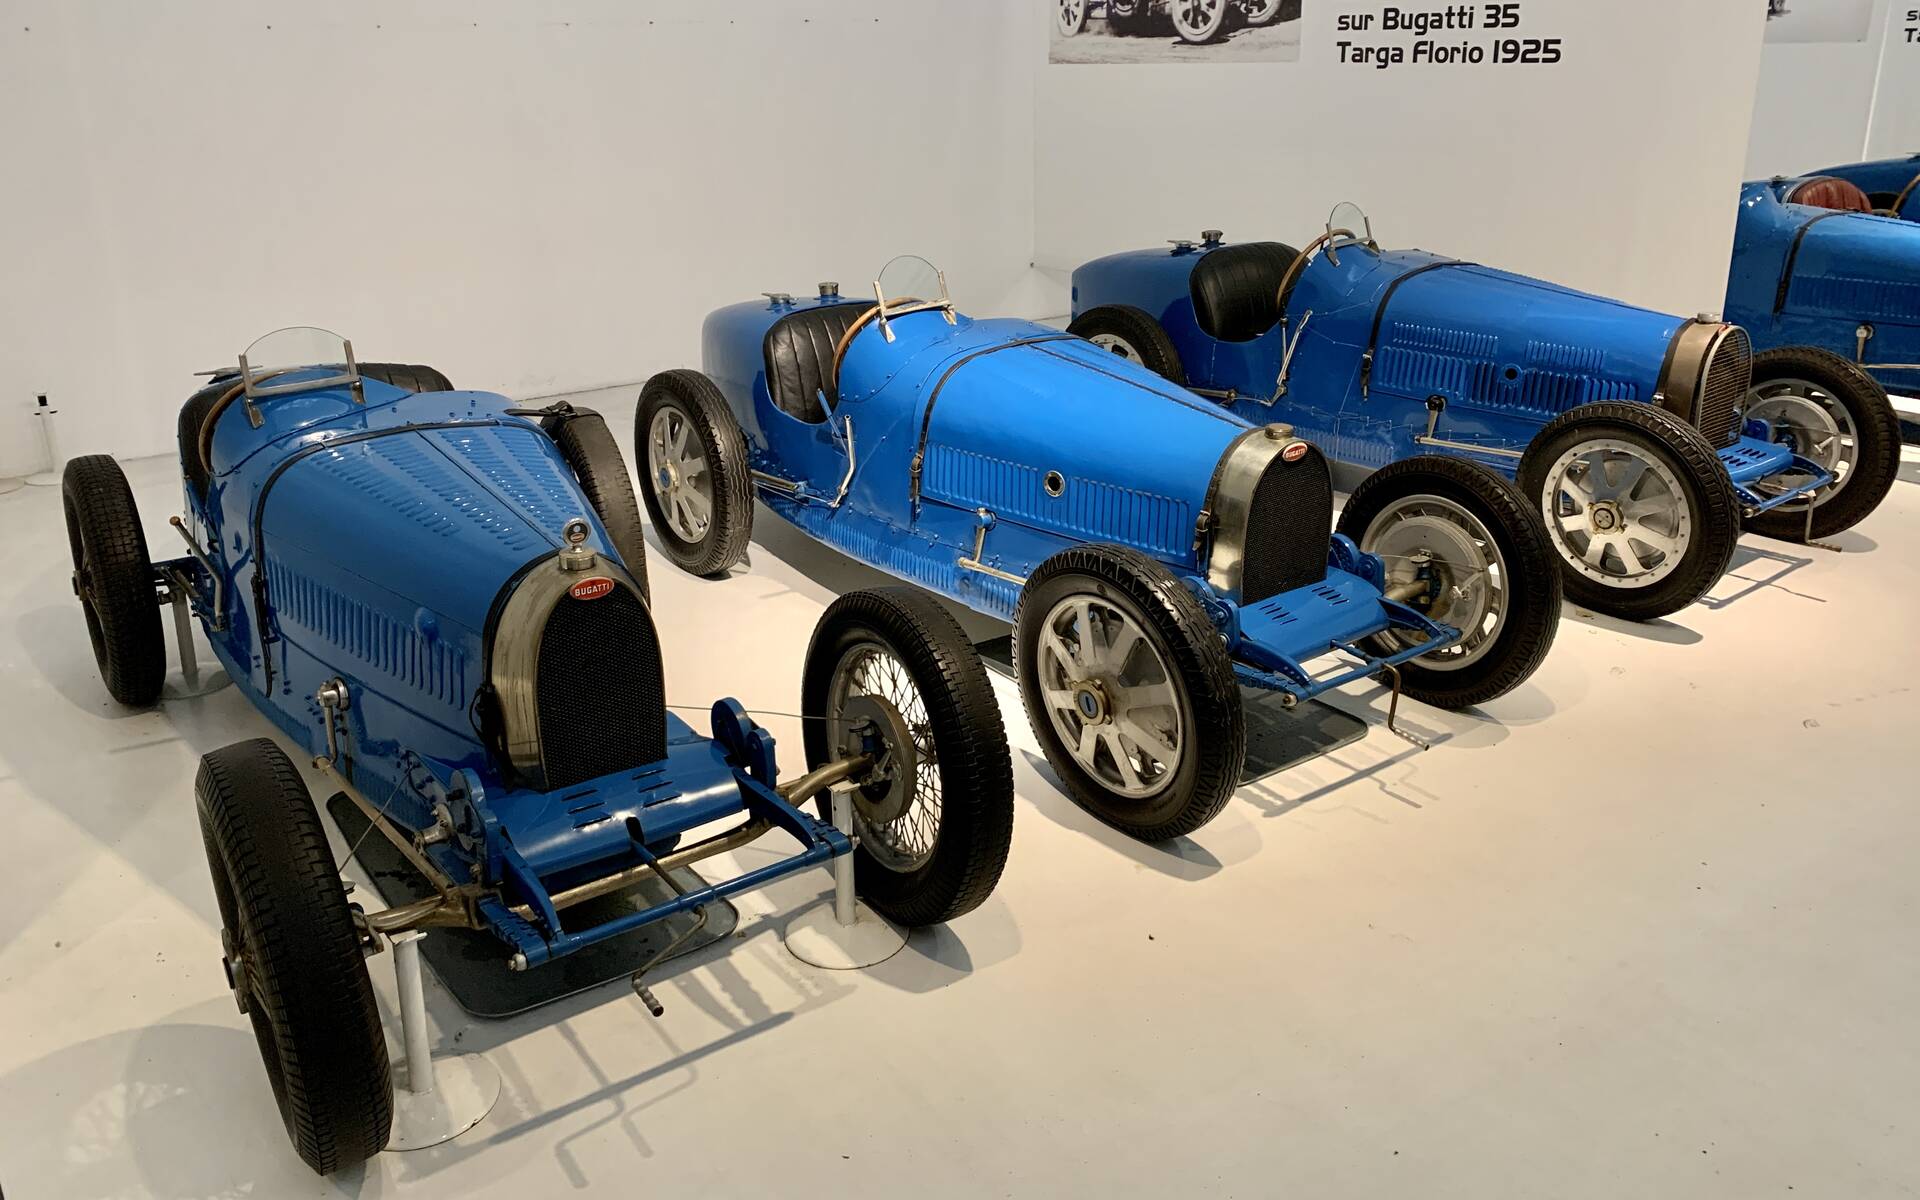 En photos : une centaine de Bugatti réunies dans un même musée 503080-en-photos-des-dizaines-de-bugatti-reunies-dans-un-meme-musee